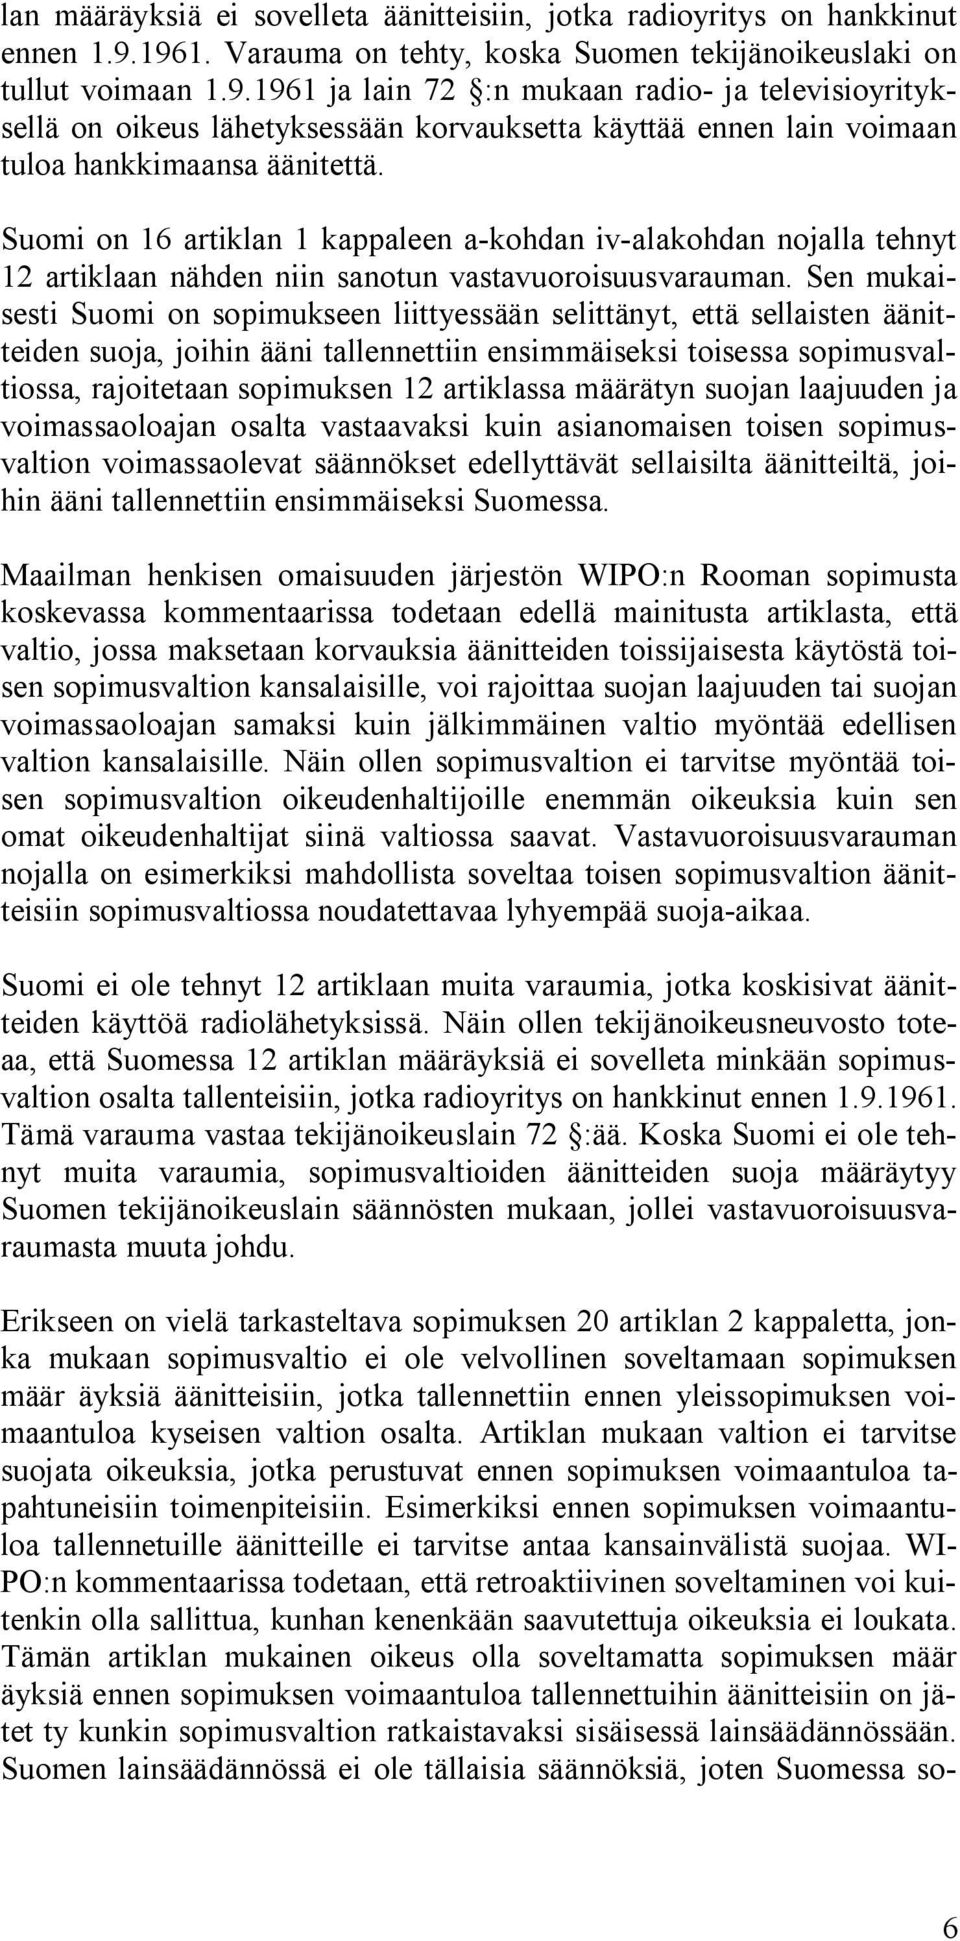 Suomi on 16 artiklan 1 kappaleen a-kohdan iv-alakohdan nojalla tehnyt 12 artiklaan nähden niin sanotun vastavuoroisuusvarauman.